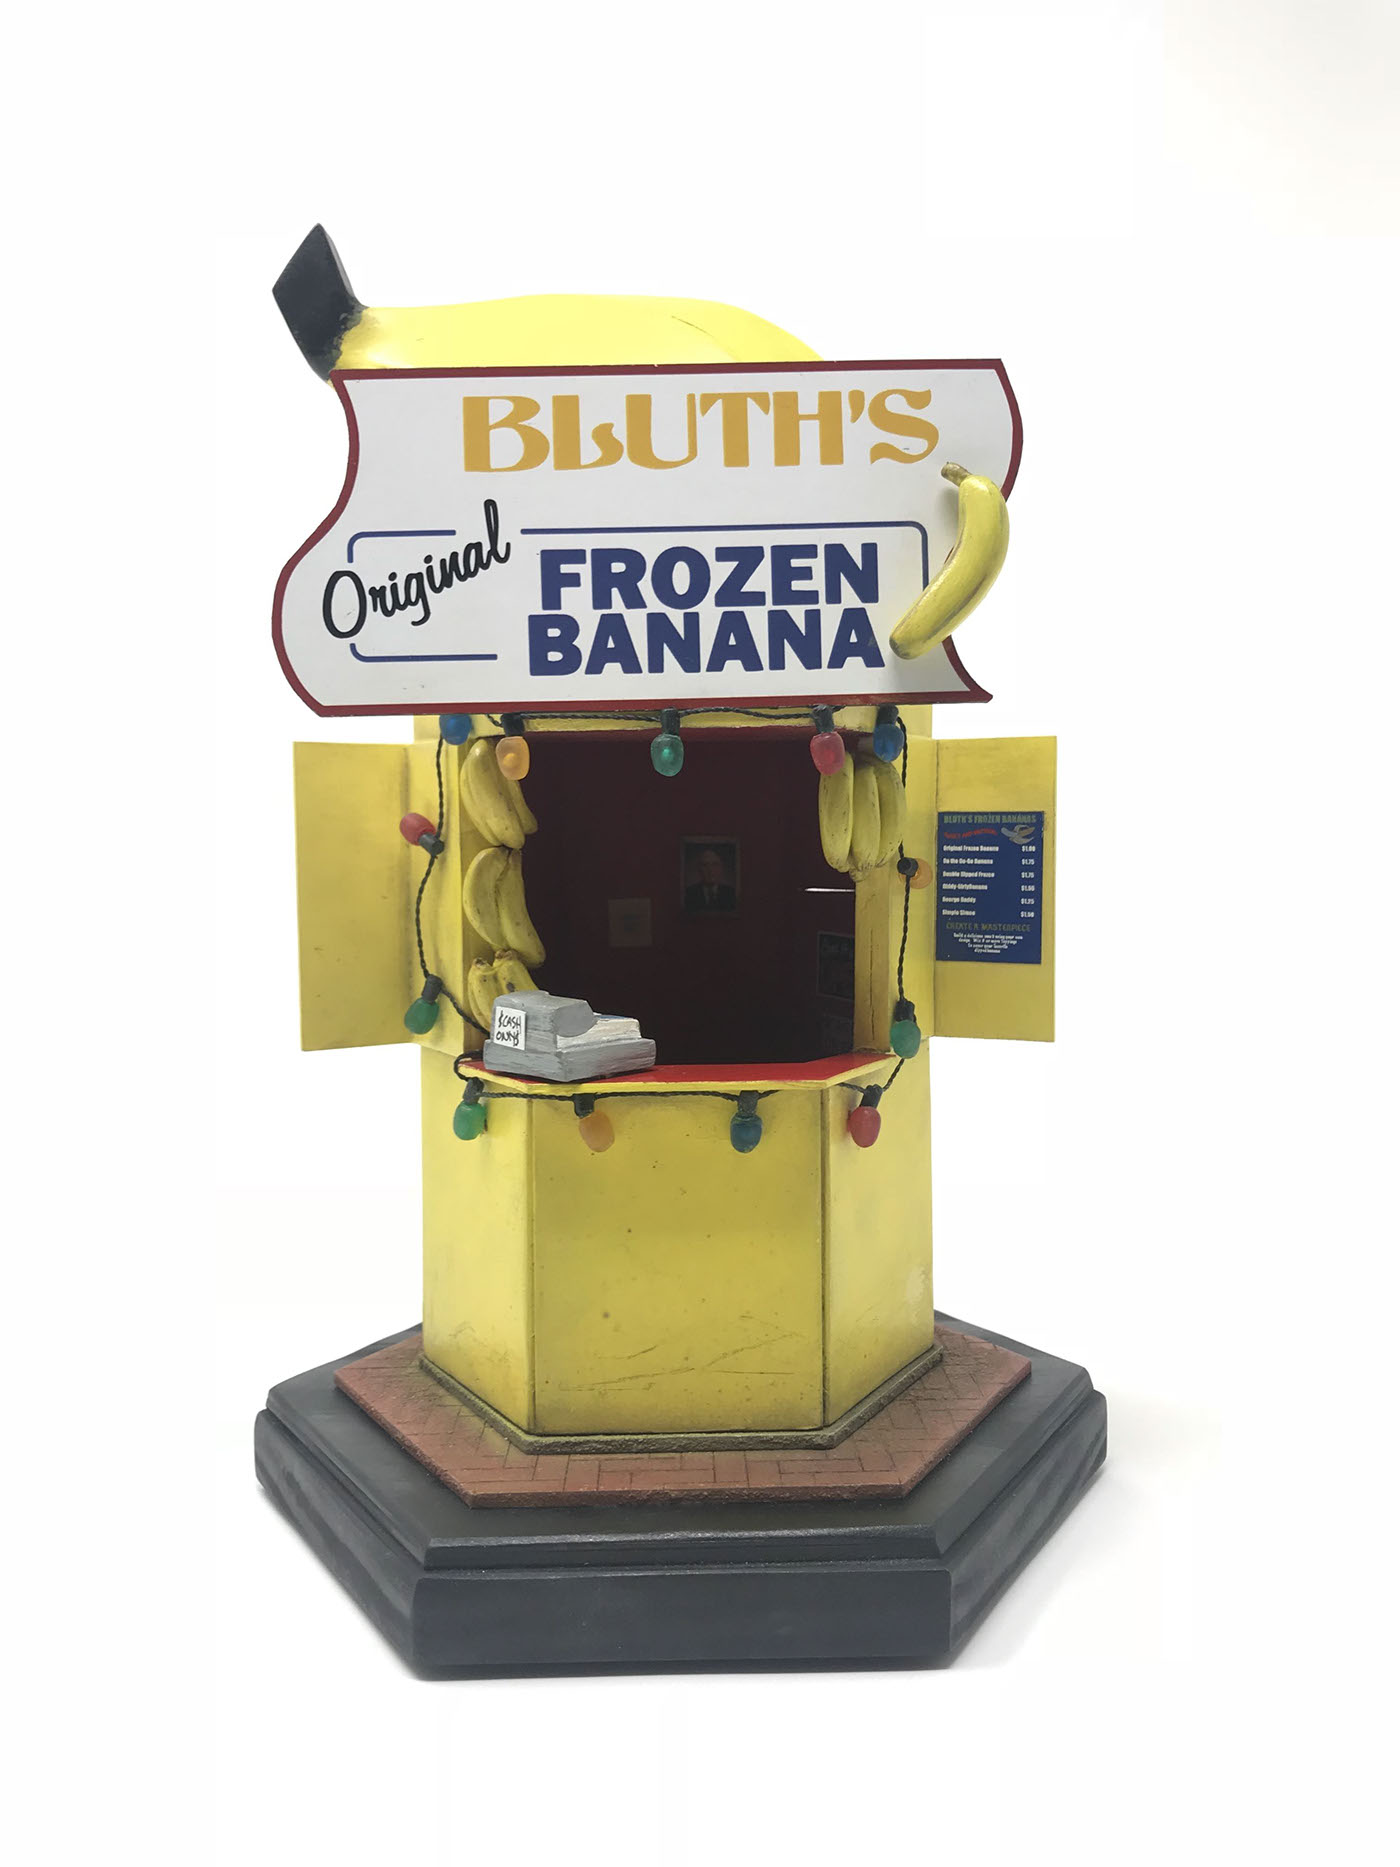 arrested development banana Stand scratch built model Miniature